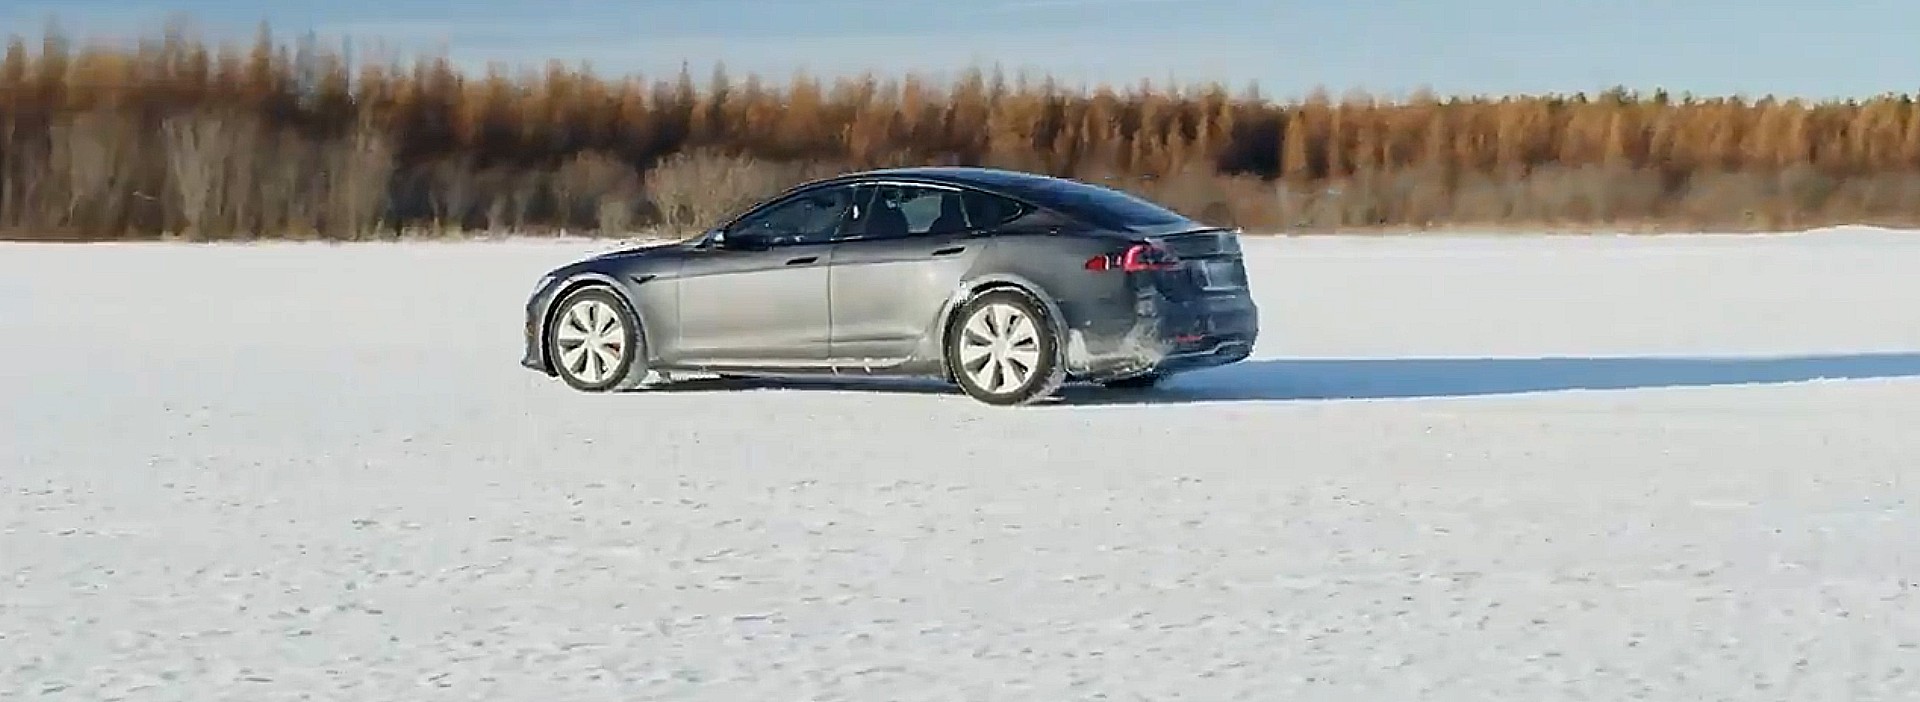 Tesla готовит Plaid Model S к созданию всепогодного автомобиля